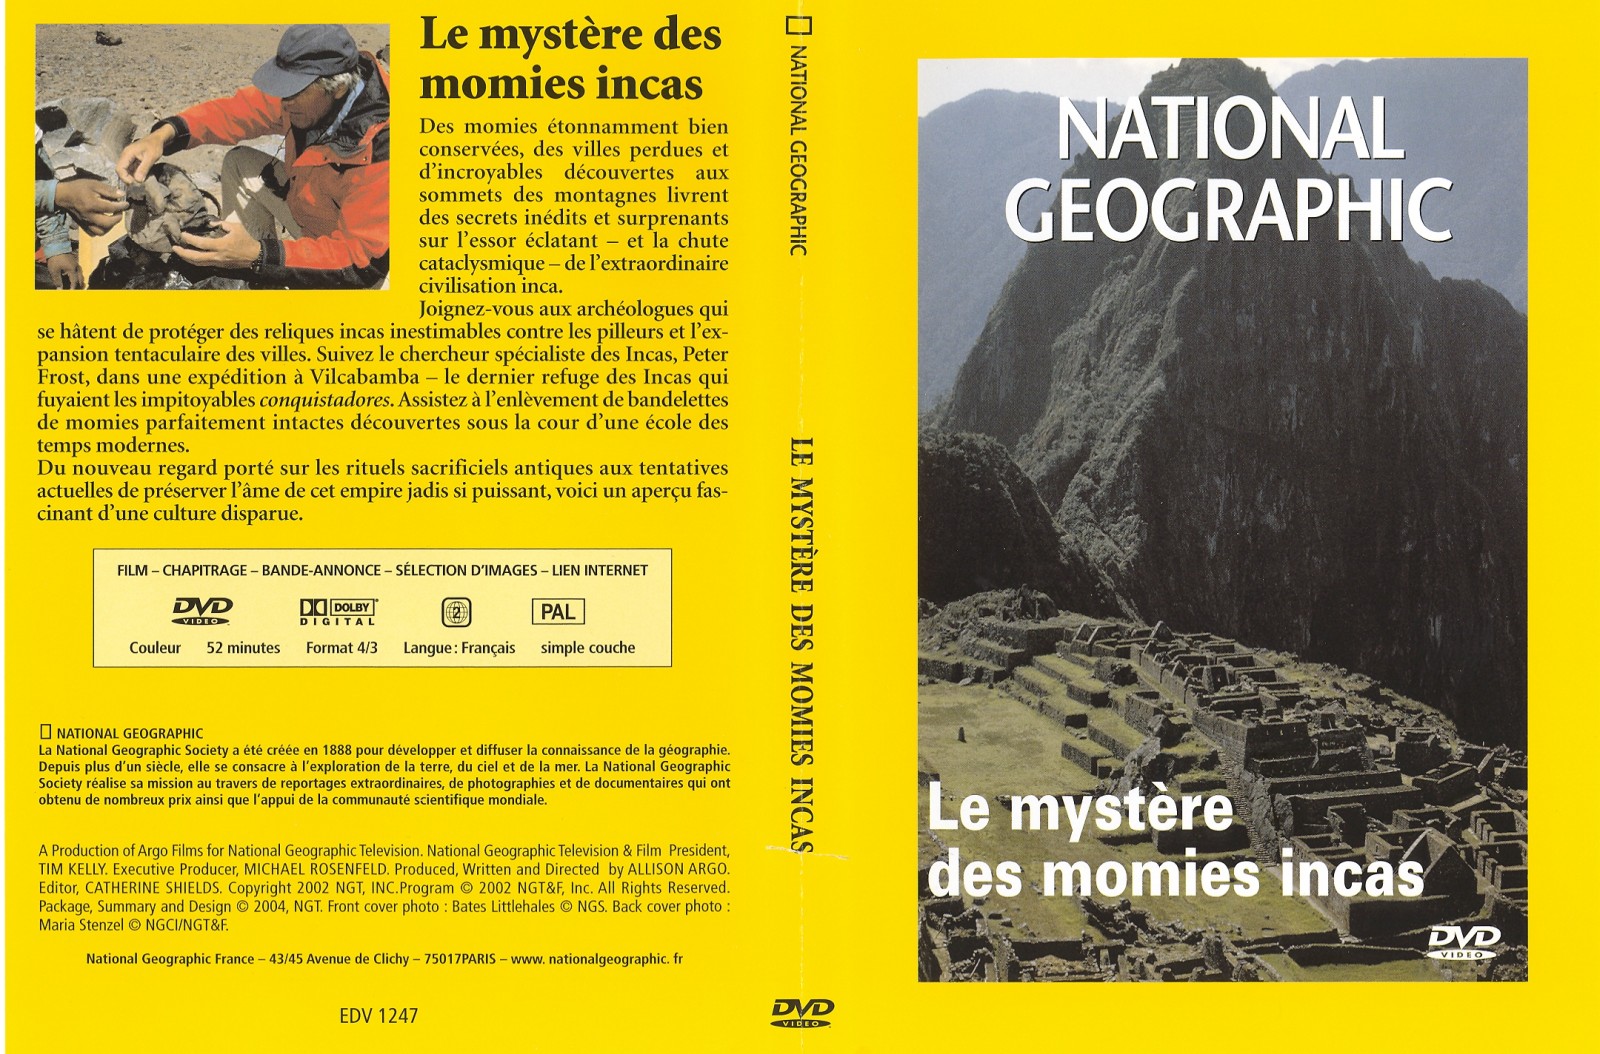 Jaquette DVD National Gographic - Les mystres des momies incas